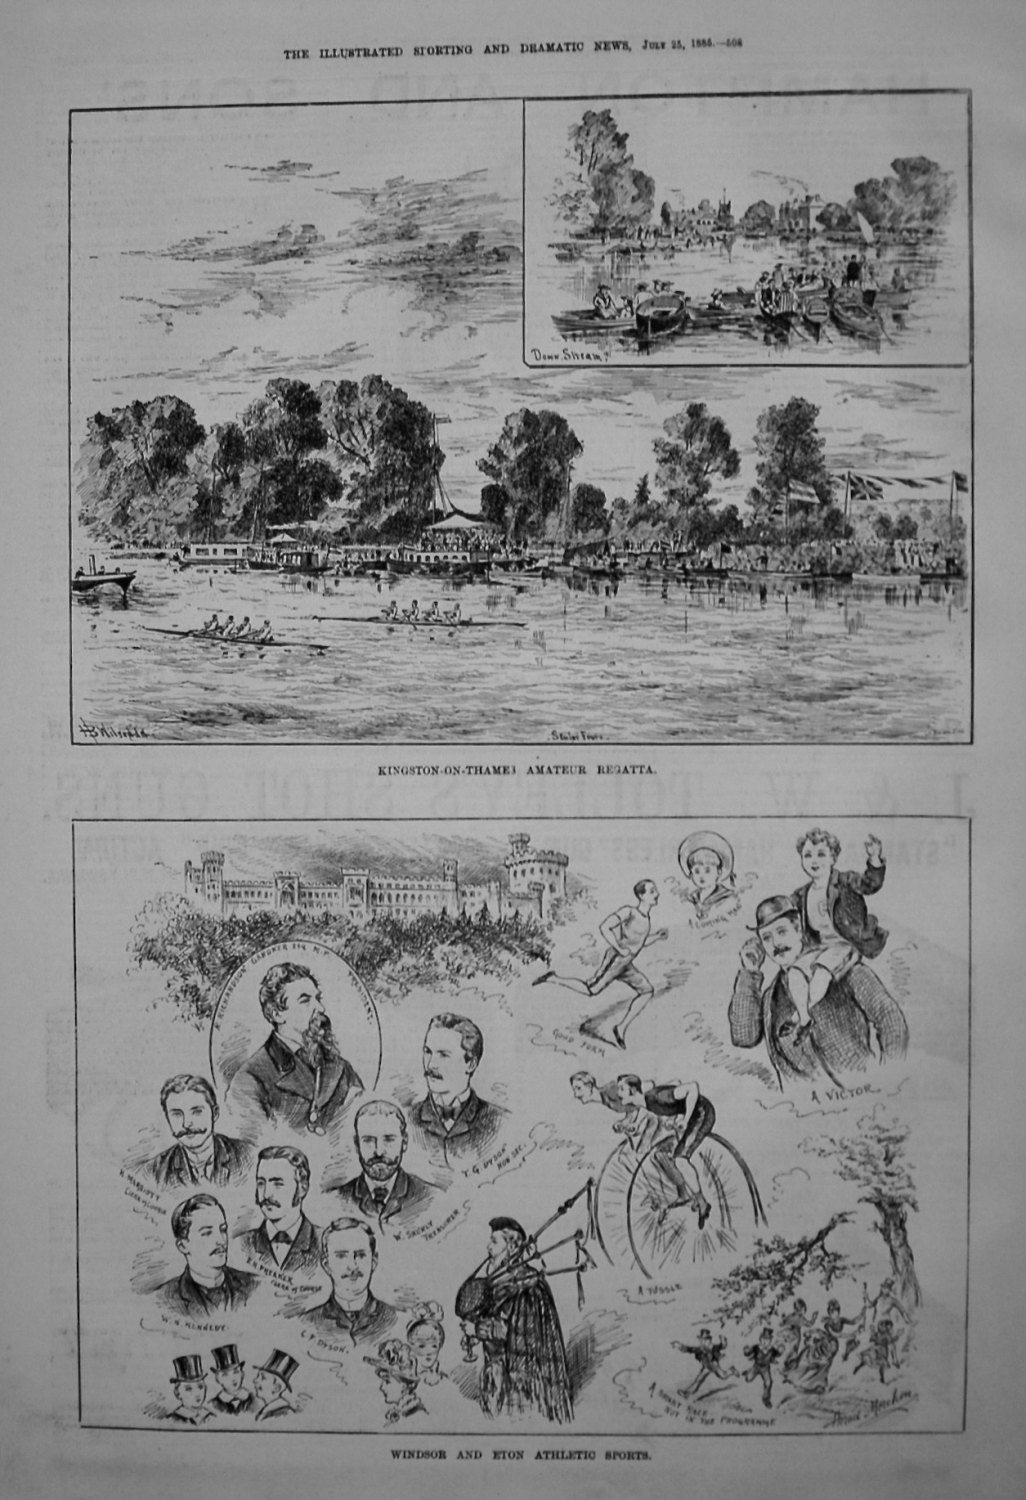 Windsor & Eton Athletic Sports. 1885